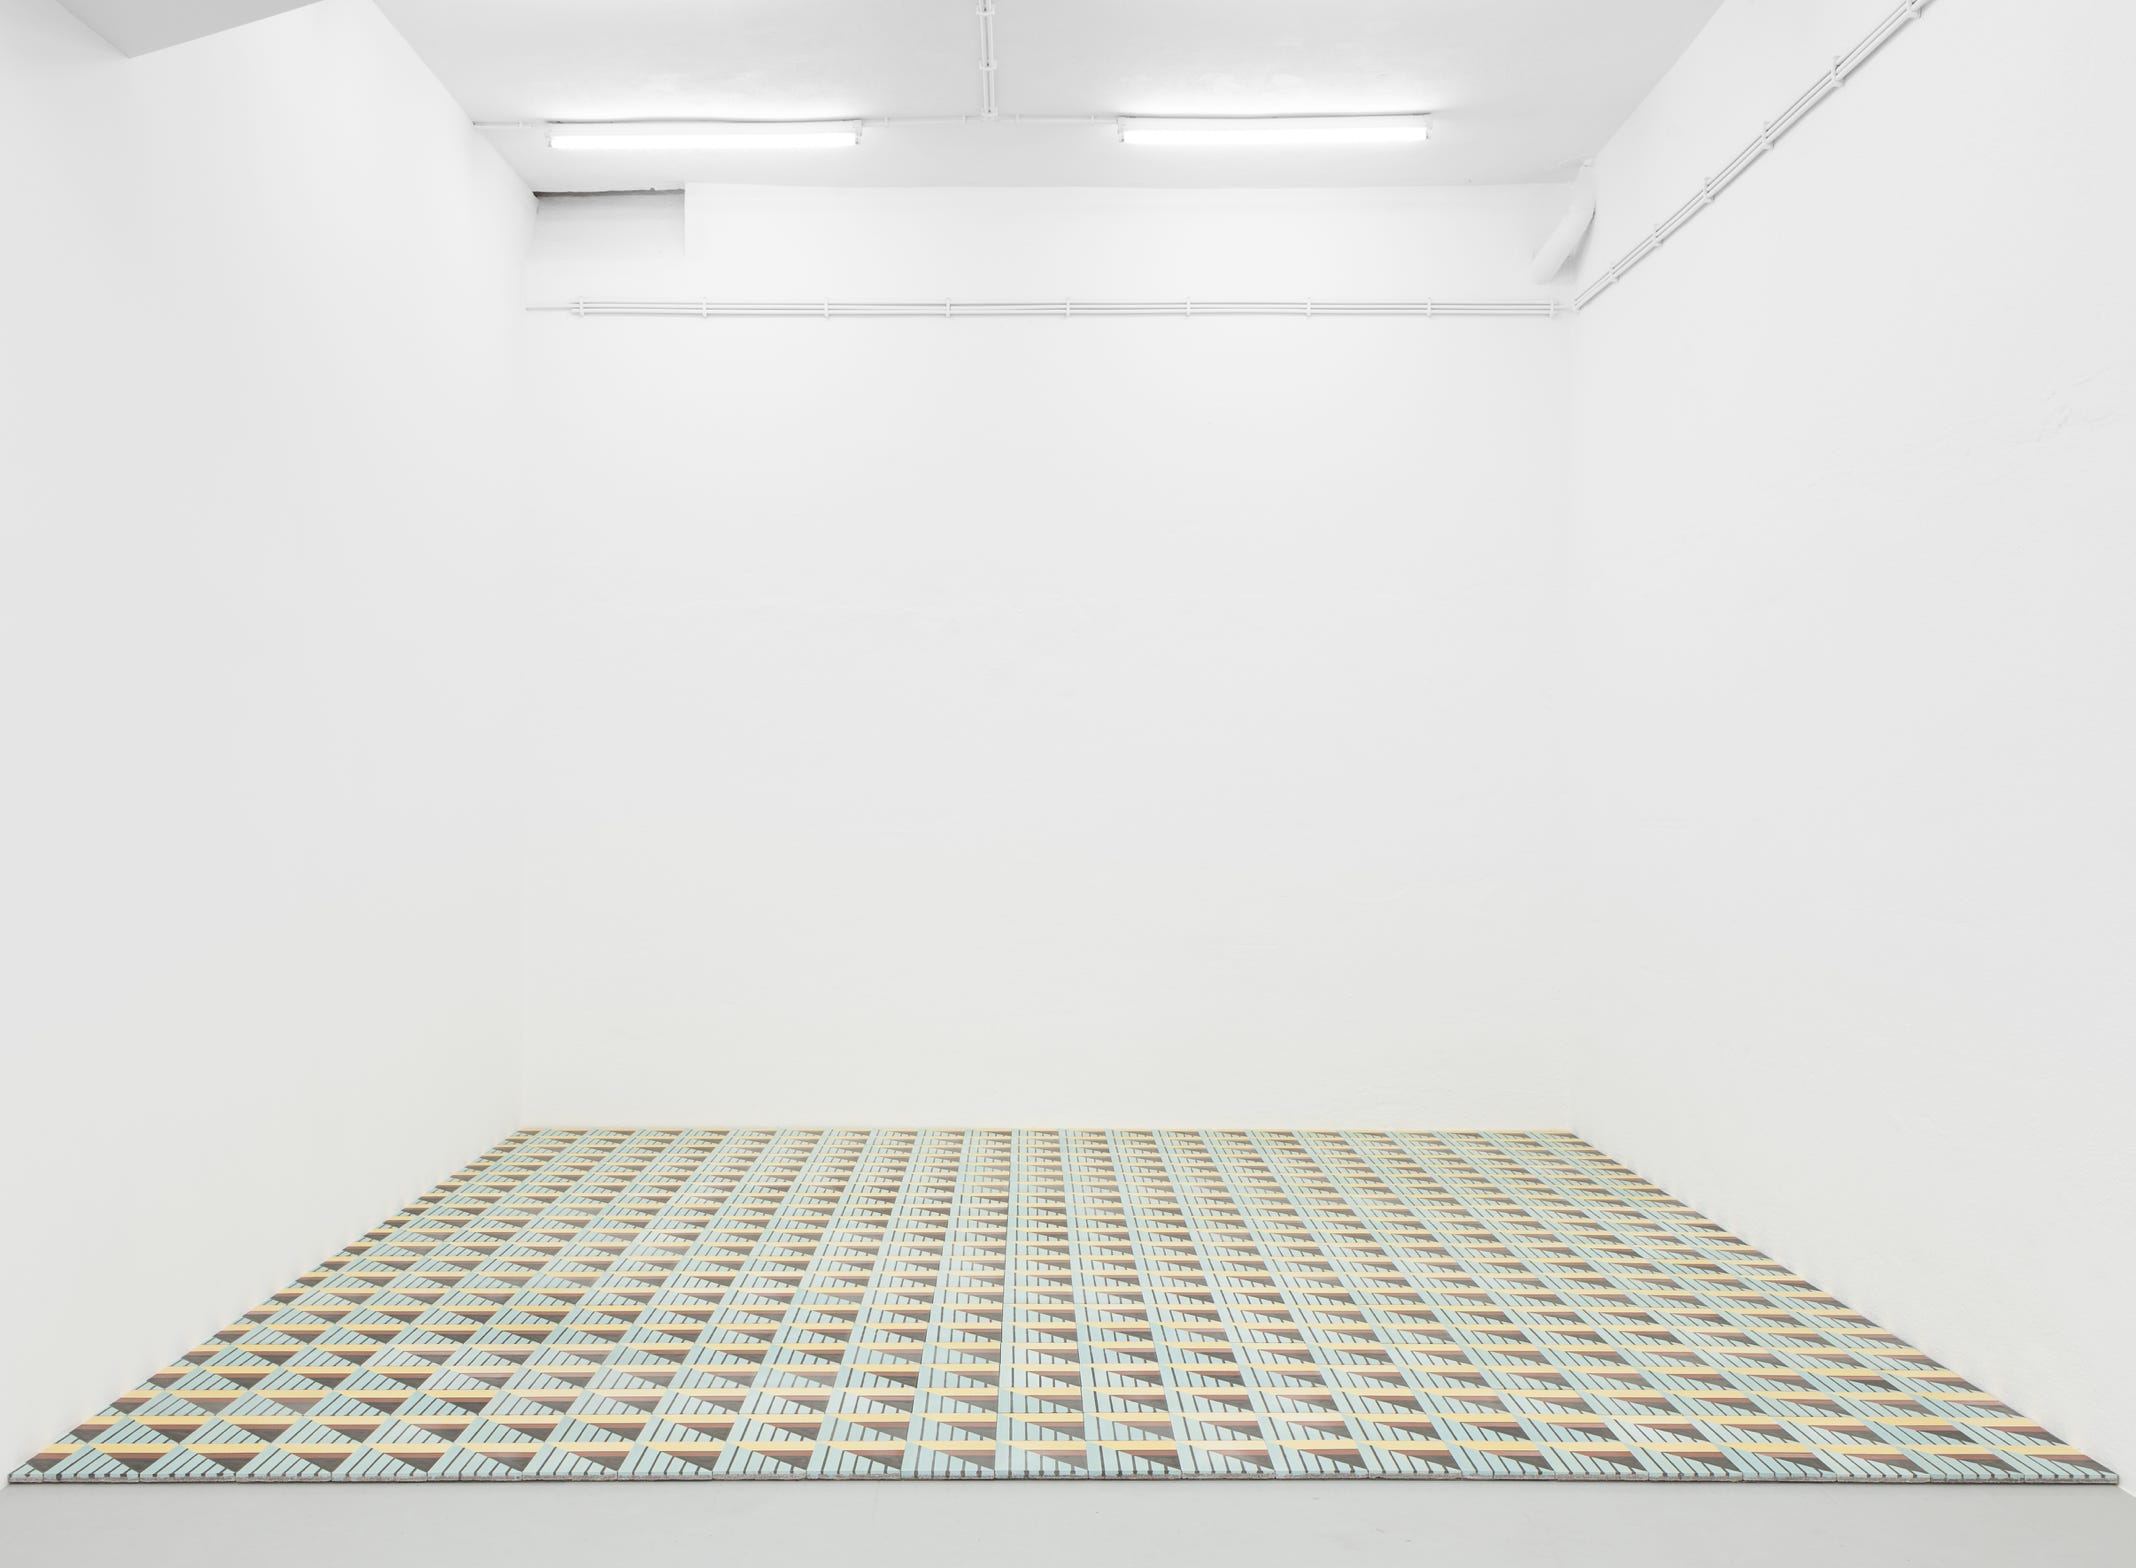 O mosaico hidráulico padrão "Engel" da Projecto Mosaico integrado na instalação Piso, 2018 da exposição na Kunsthalle Lissabon da autoria do artista Leonardo Engel